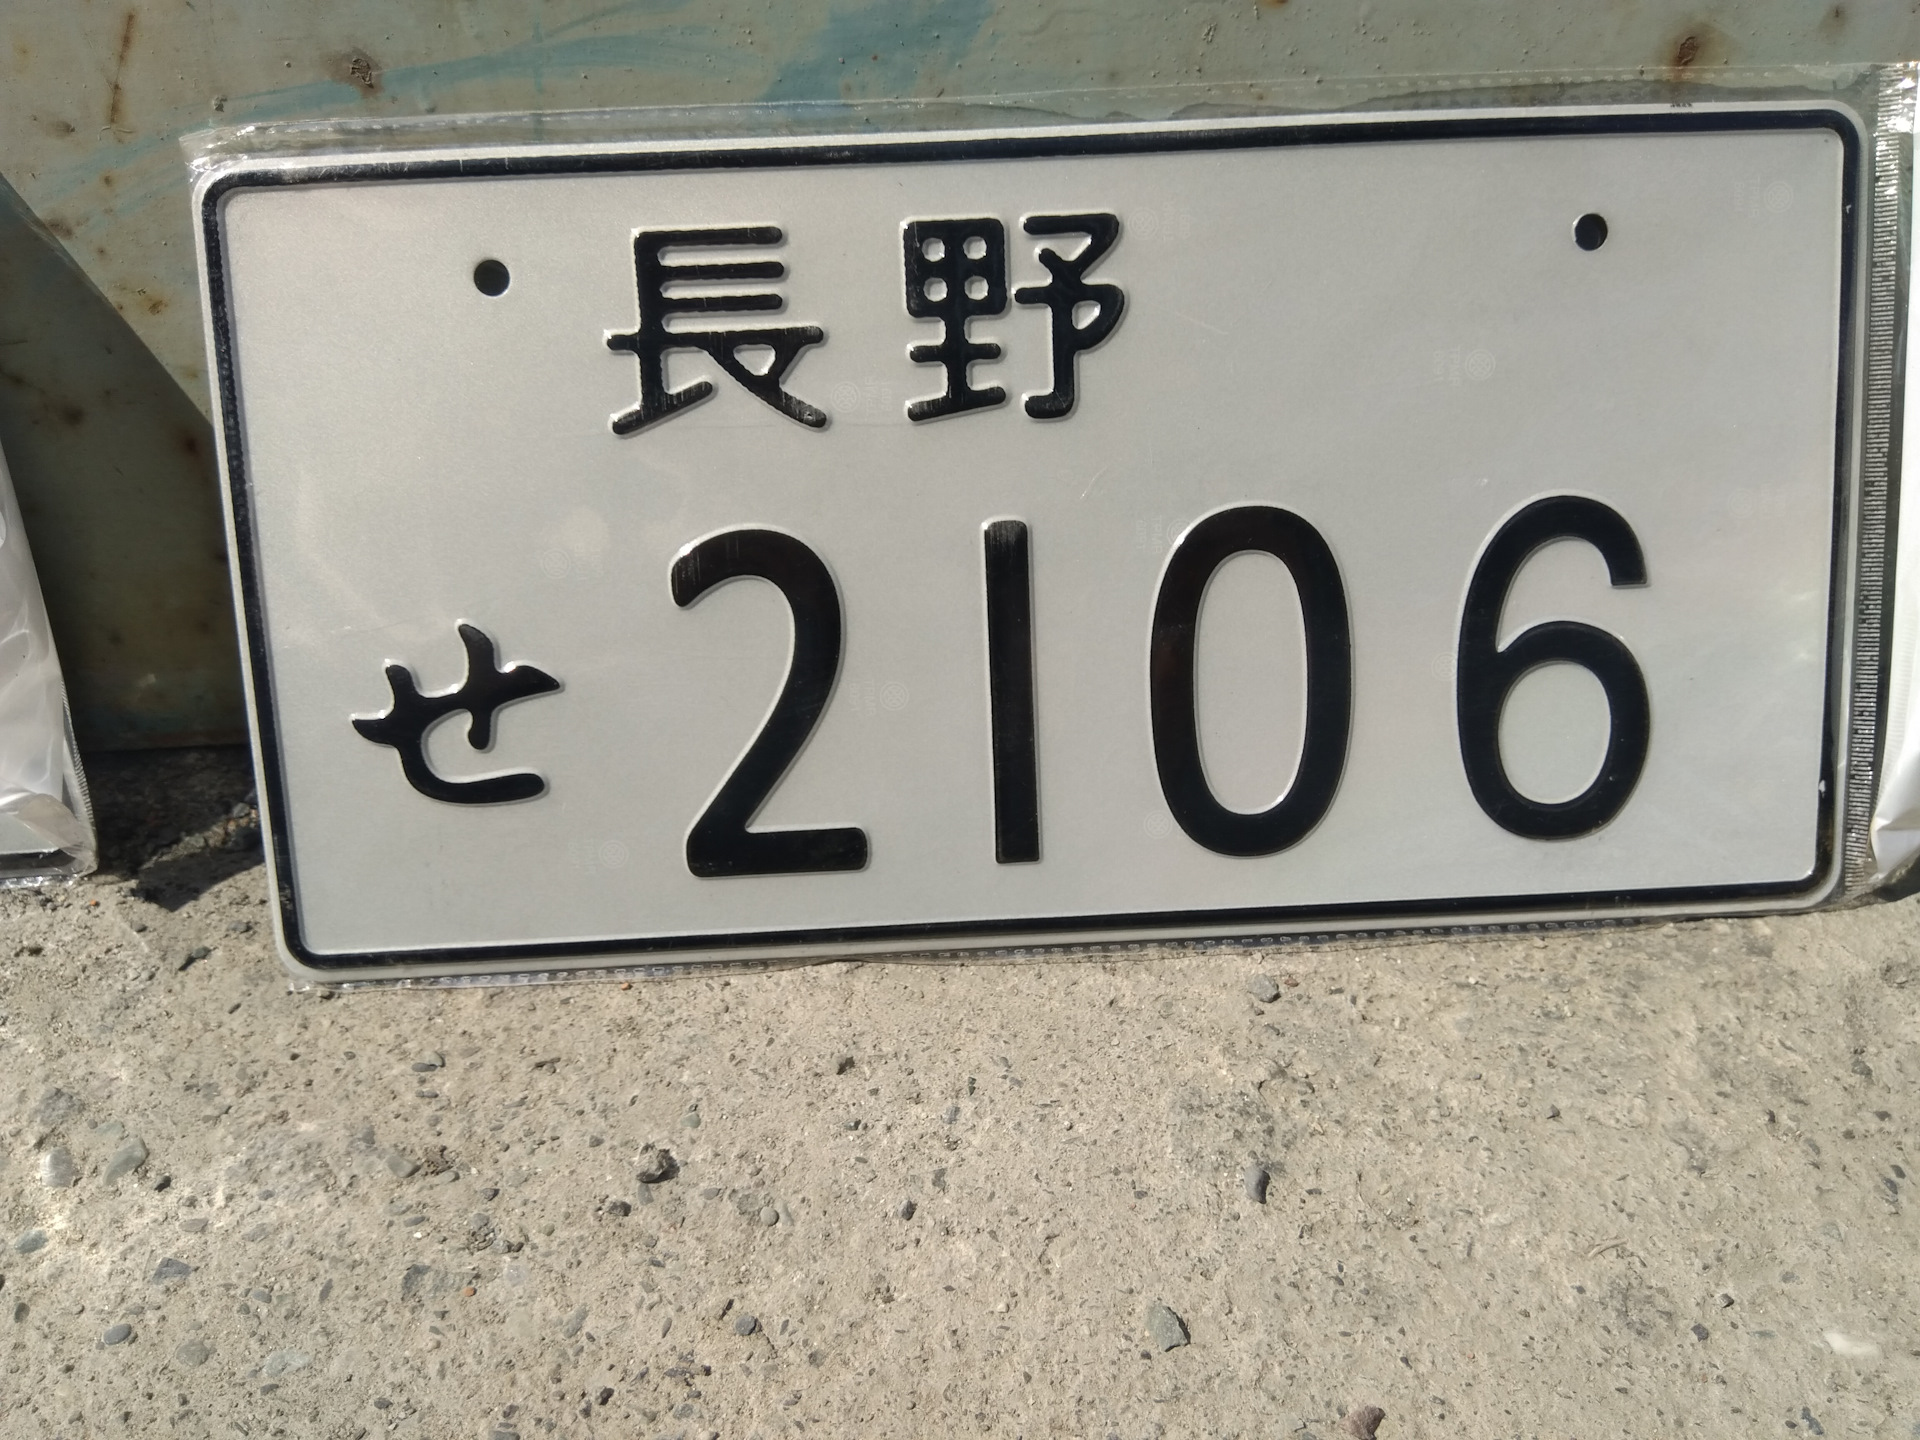 Номер главной. Квадратный номер на ВАЗ 2106. Сувенирные номерные знаки. Сувенирные номера на авто. Квадратные номера.